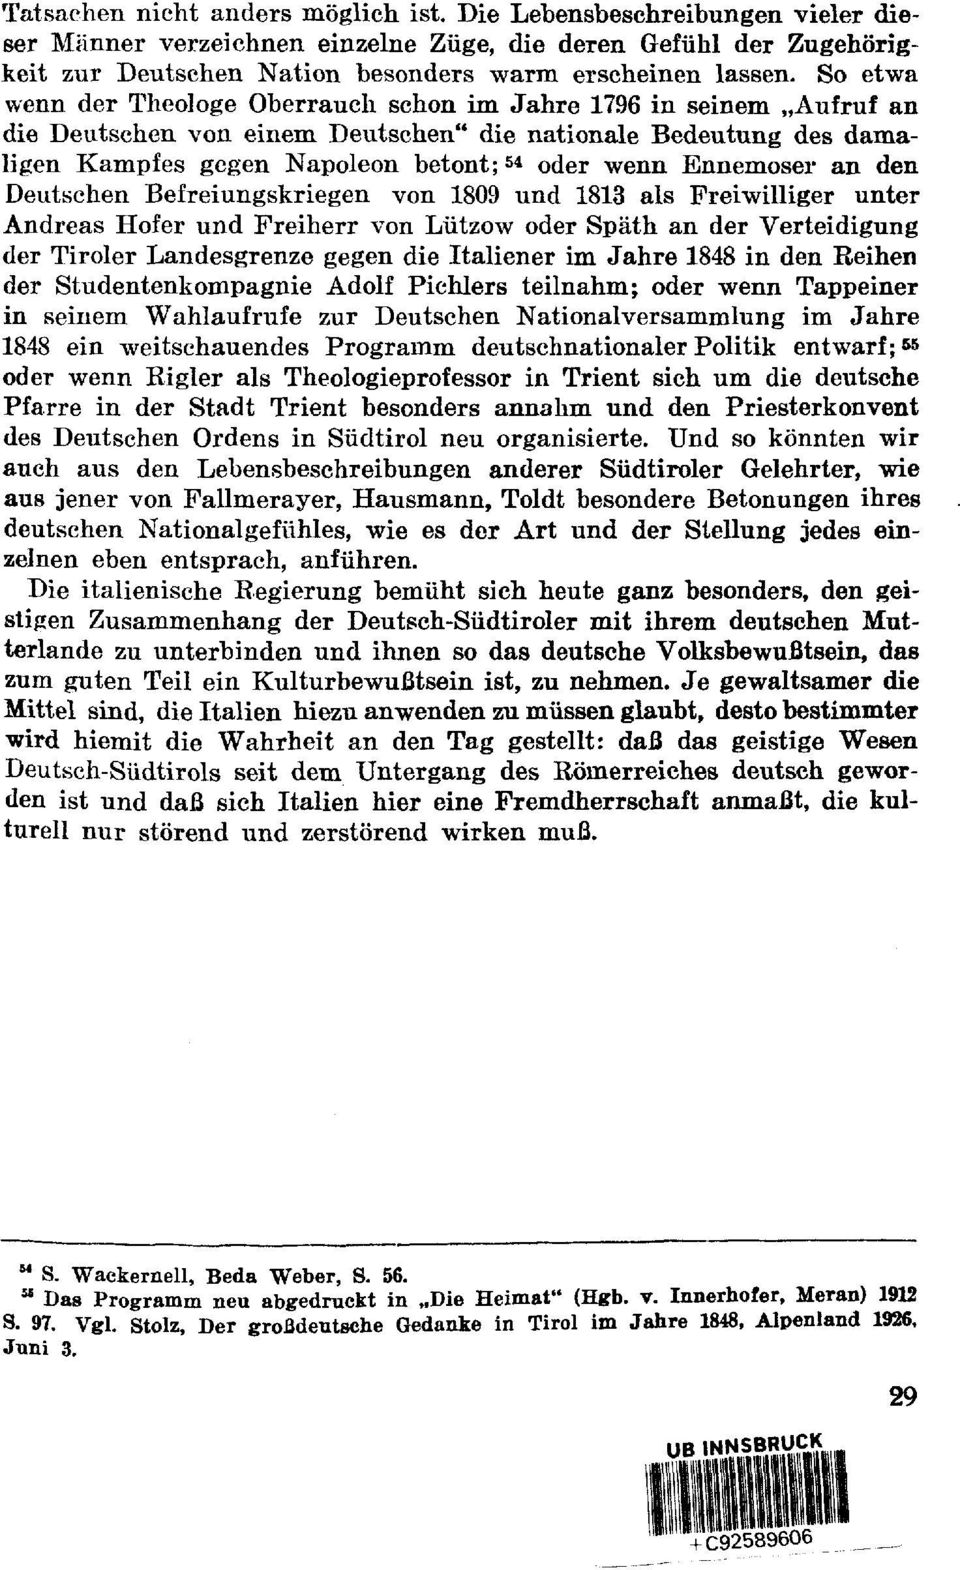 Ennemoser an den Deutschen Befreiungskriegen von 1809 und 1813 als Freiwilliger unter Andreas Hofer und Freiherr von Lützow oder Späth an der Verteidigung der Tiroler Landesgrenze gegen die Italiener